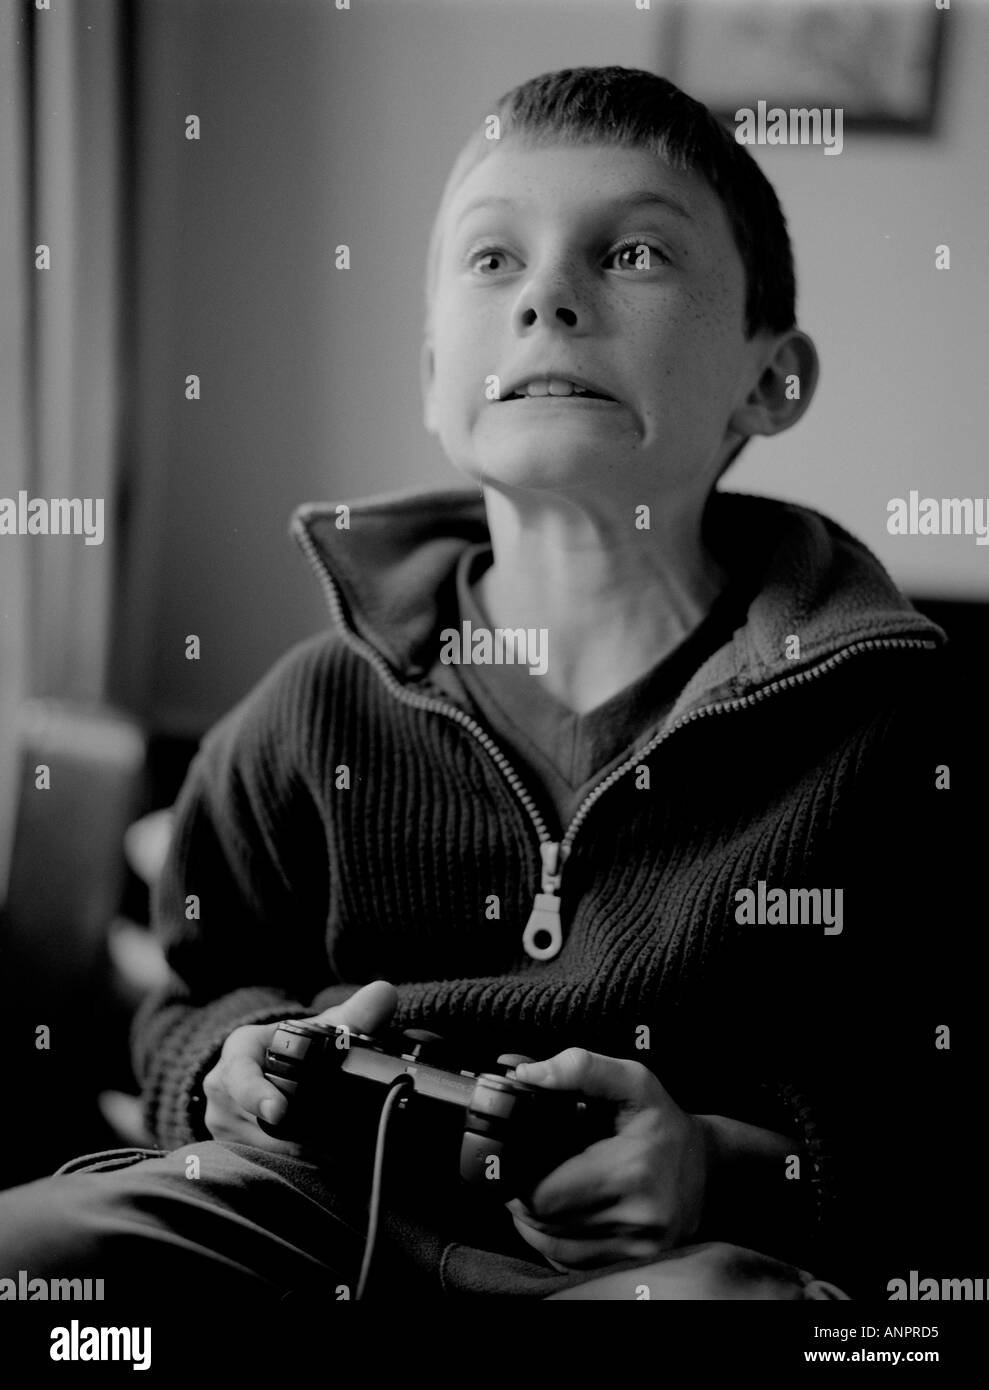 Junge auf einem Playstation spielen Stockfoto